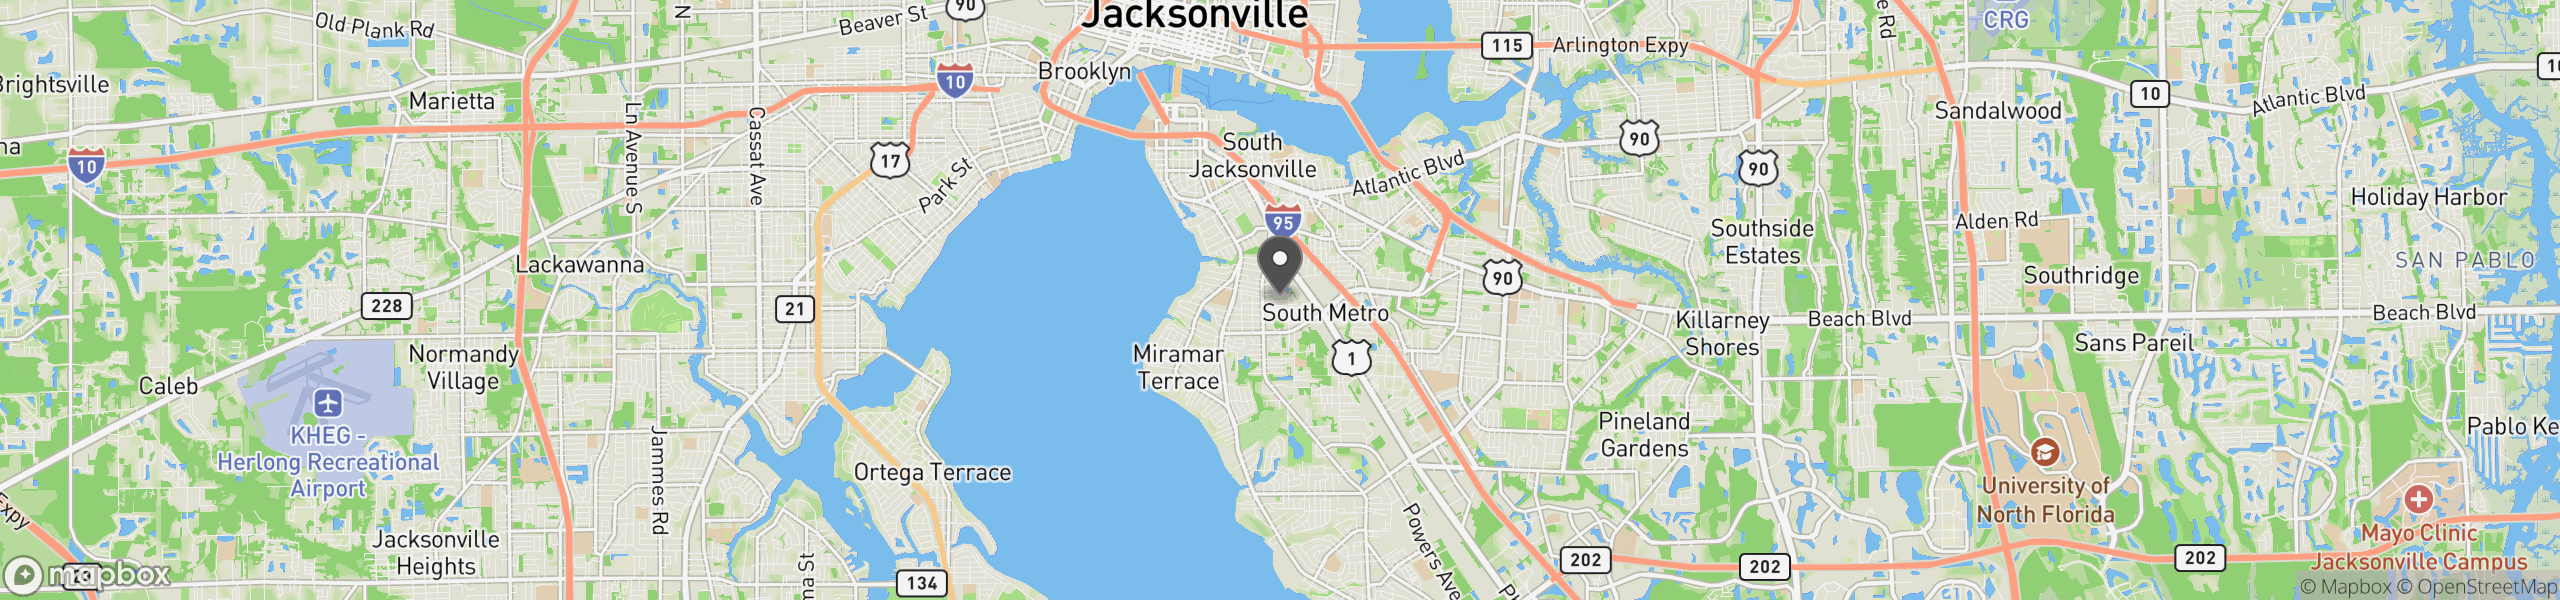 Jacksonville, FL 32207